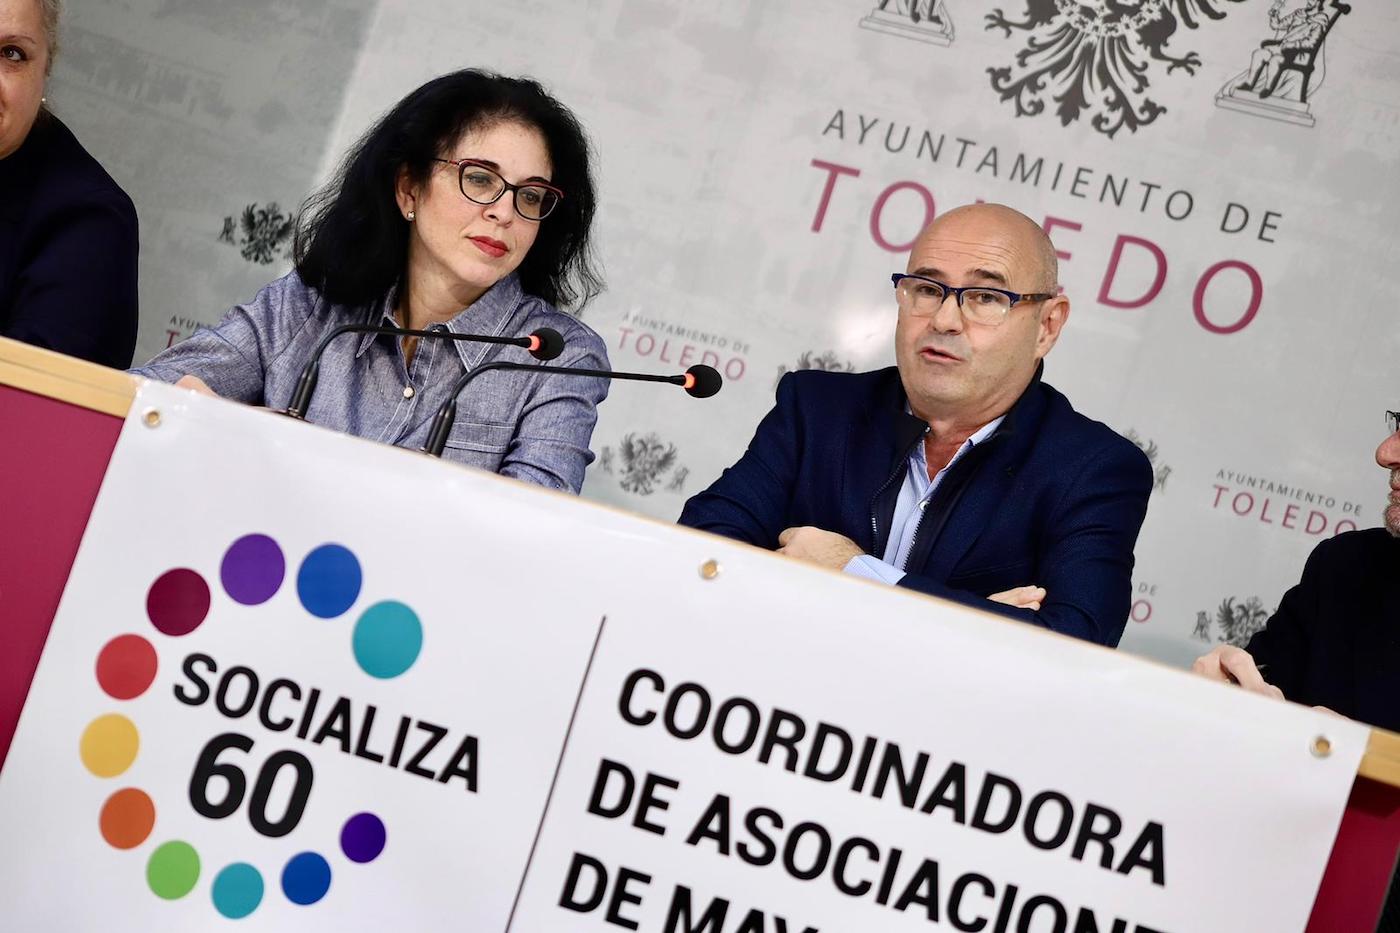 Nace la Coordinadora de Asociaciones de Mayores de Toledo “Socializa 60”